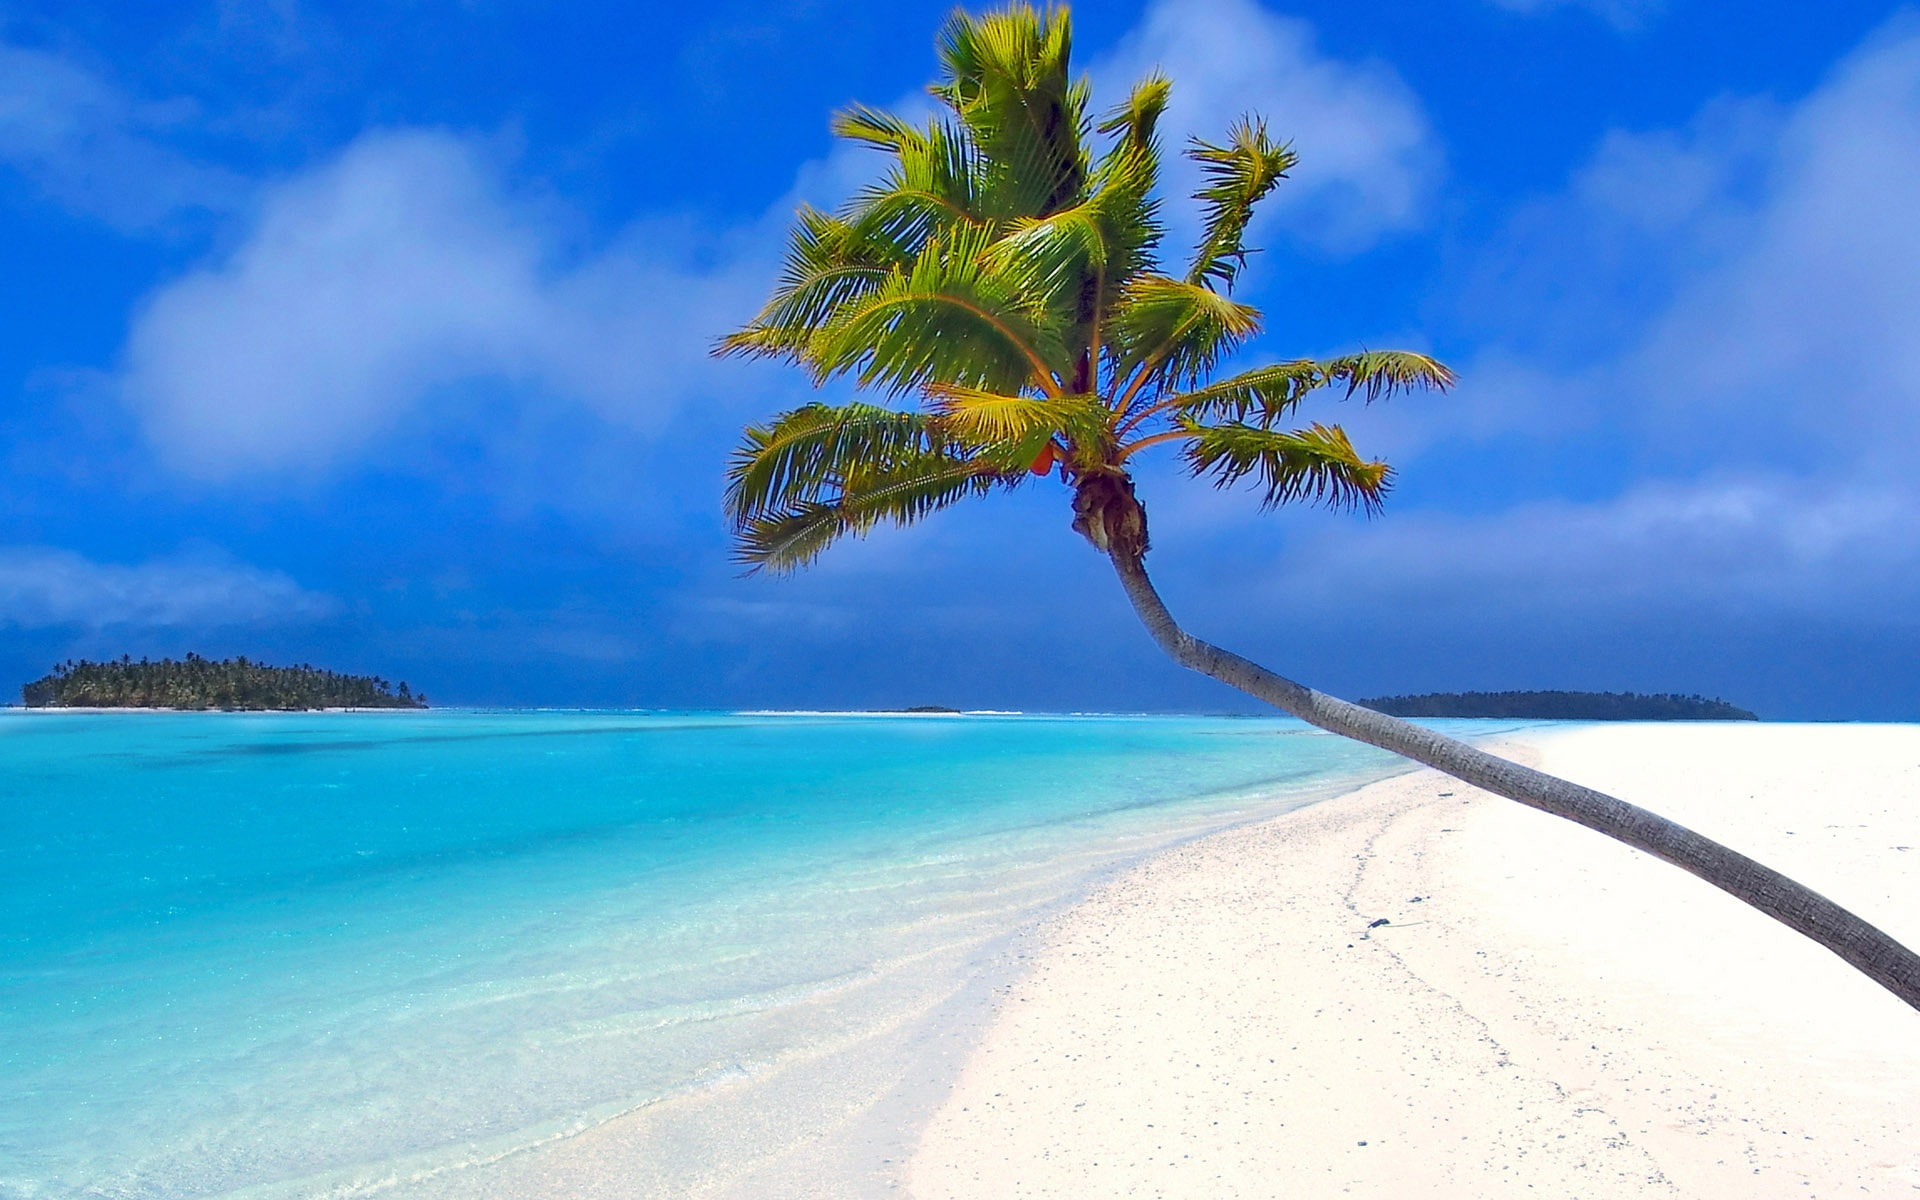 Beach by a coconut tree, Sea, Palm